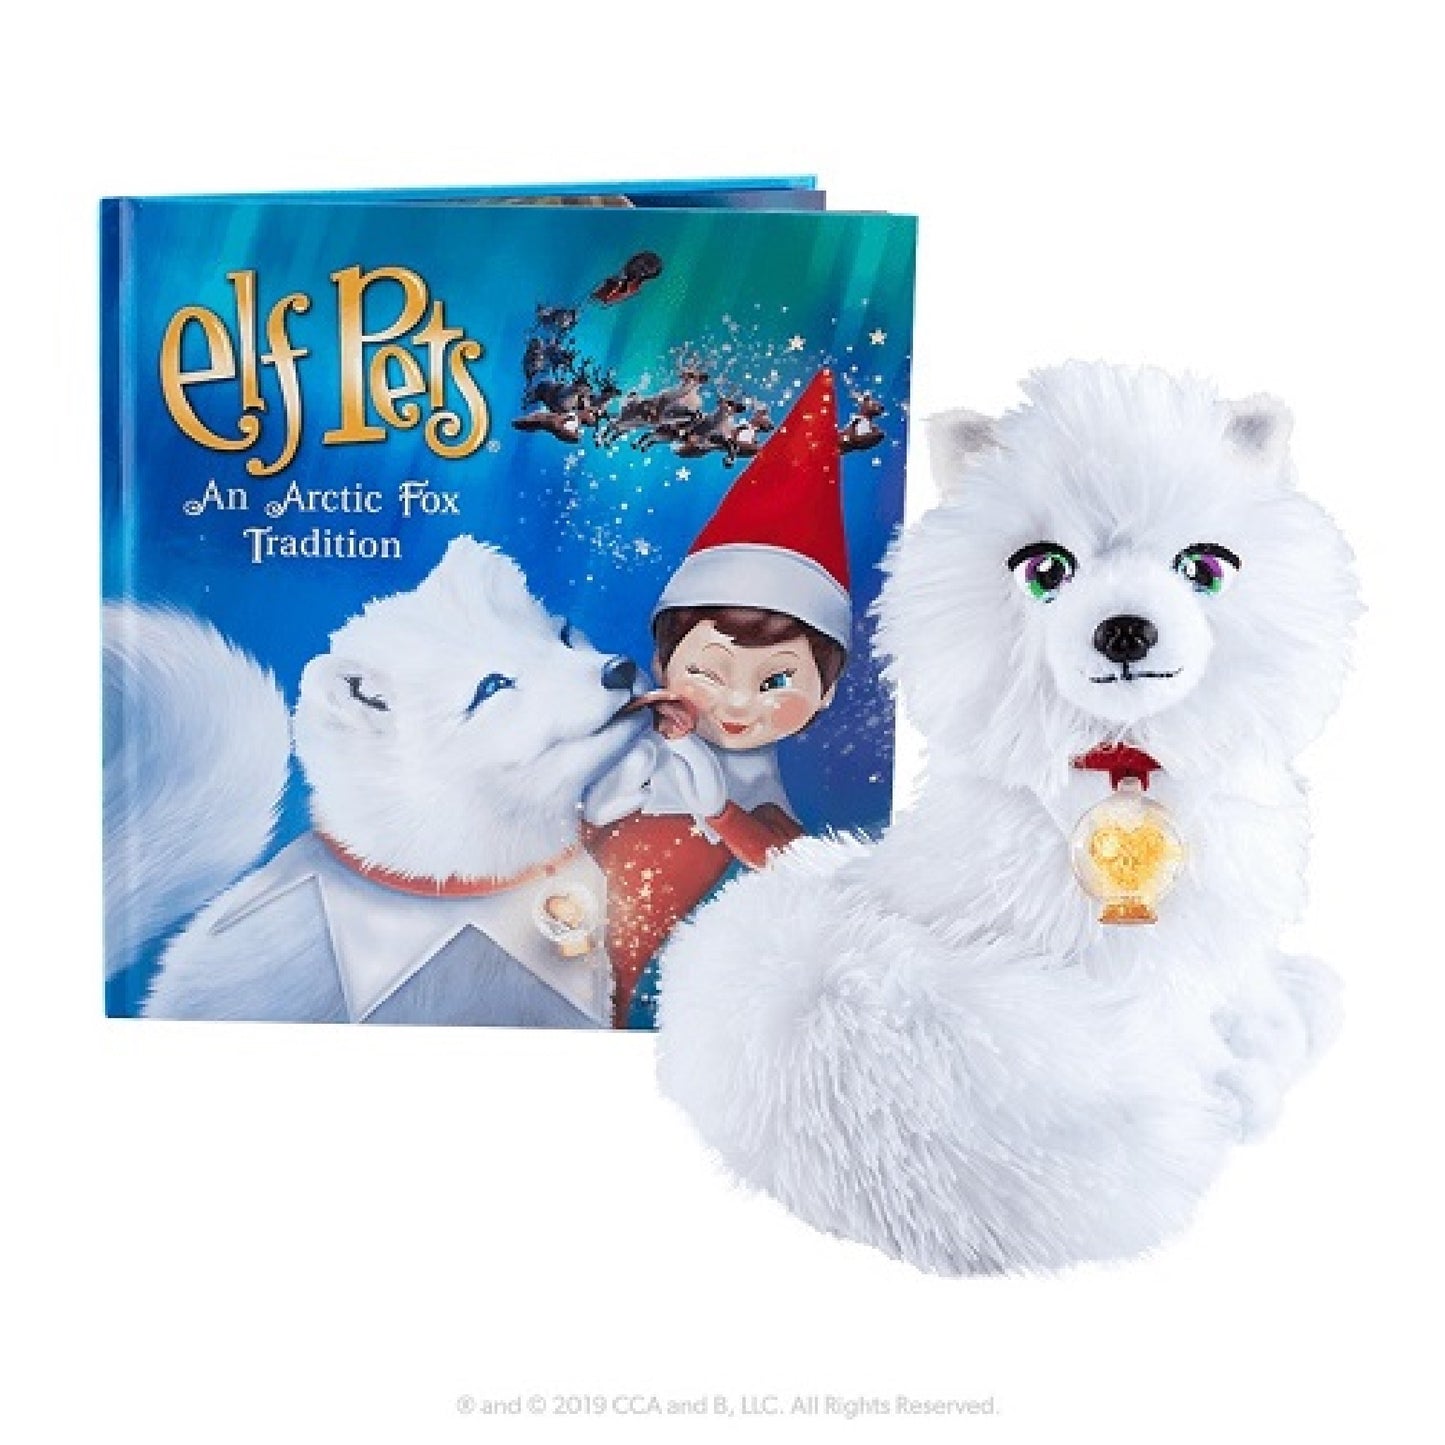 The Elf on the Shelf® Elf Pets® Une tradition du renard arctique